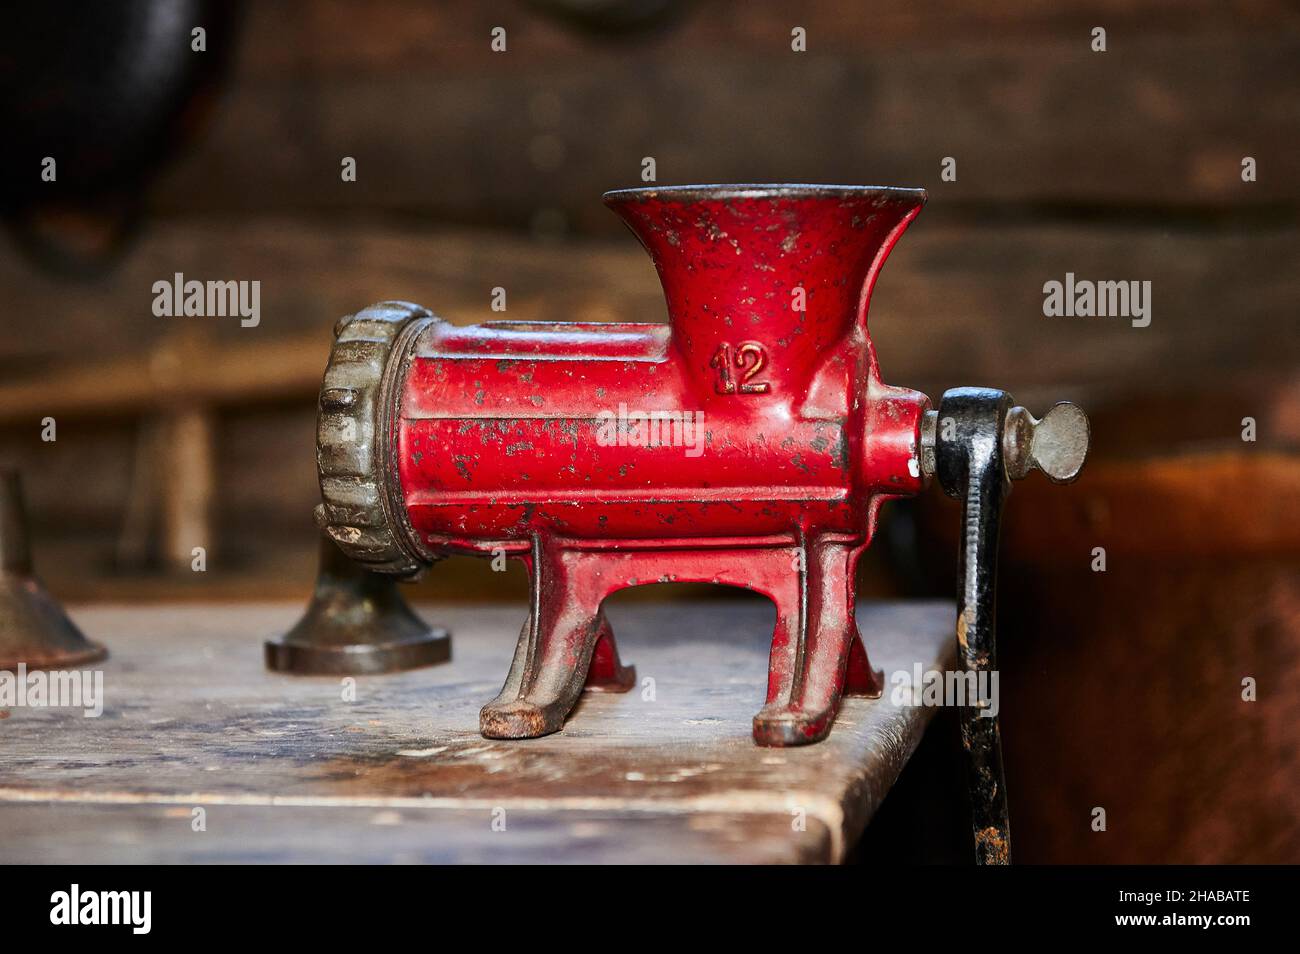 ancienne machine à hacher rouge isolée sur une table en bois Banque D'Images